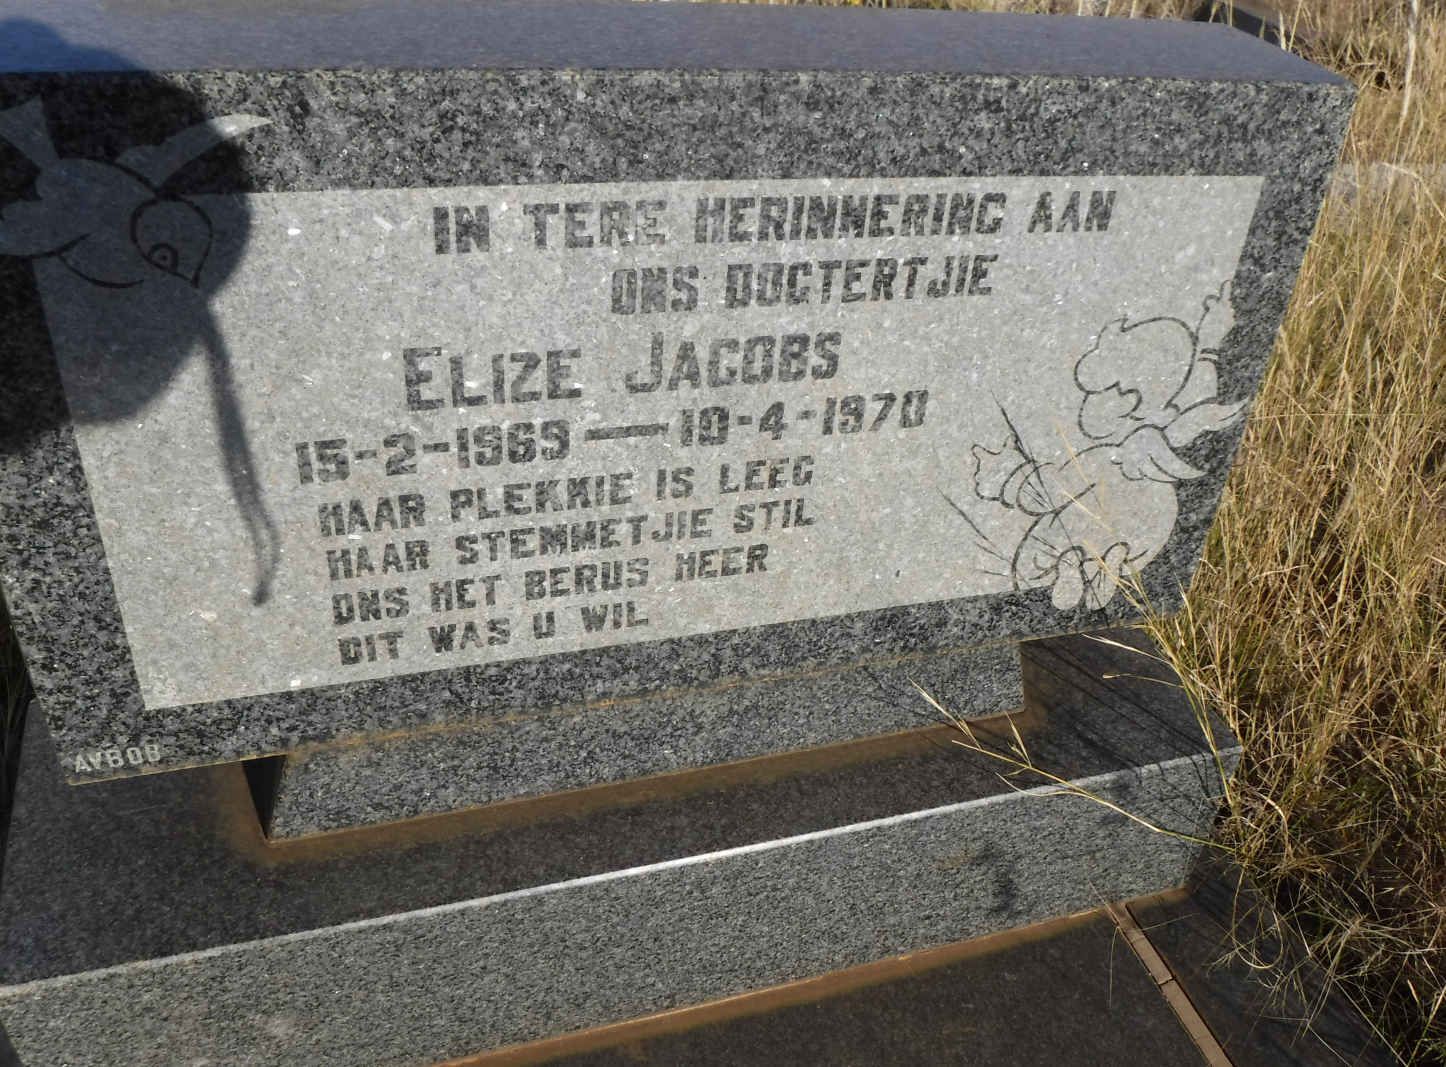 JACOBS Elize 1969-1970